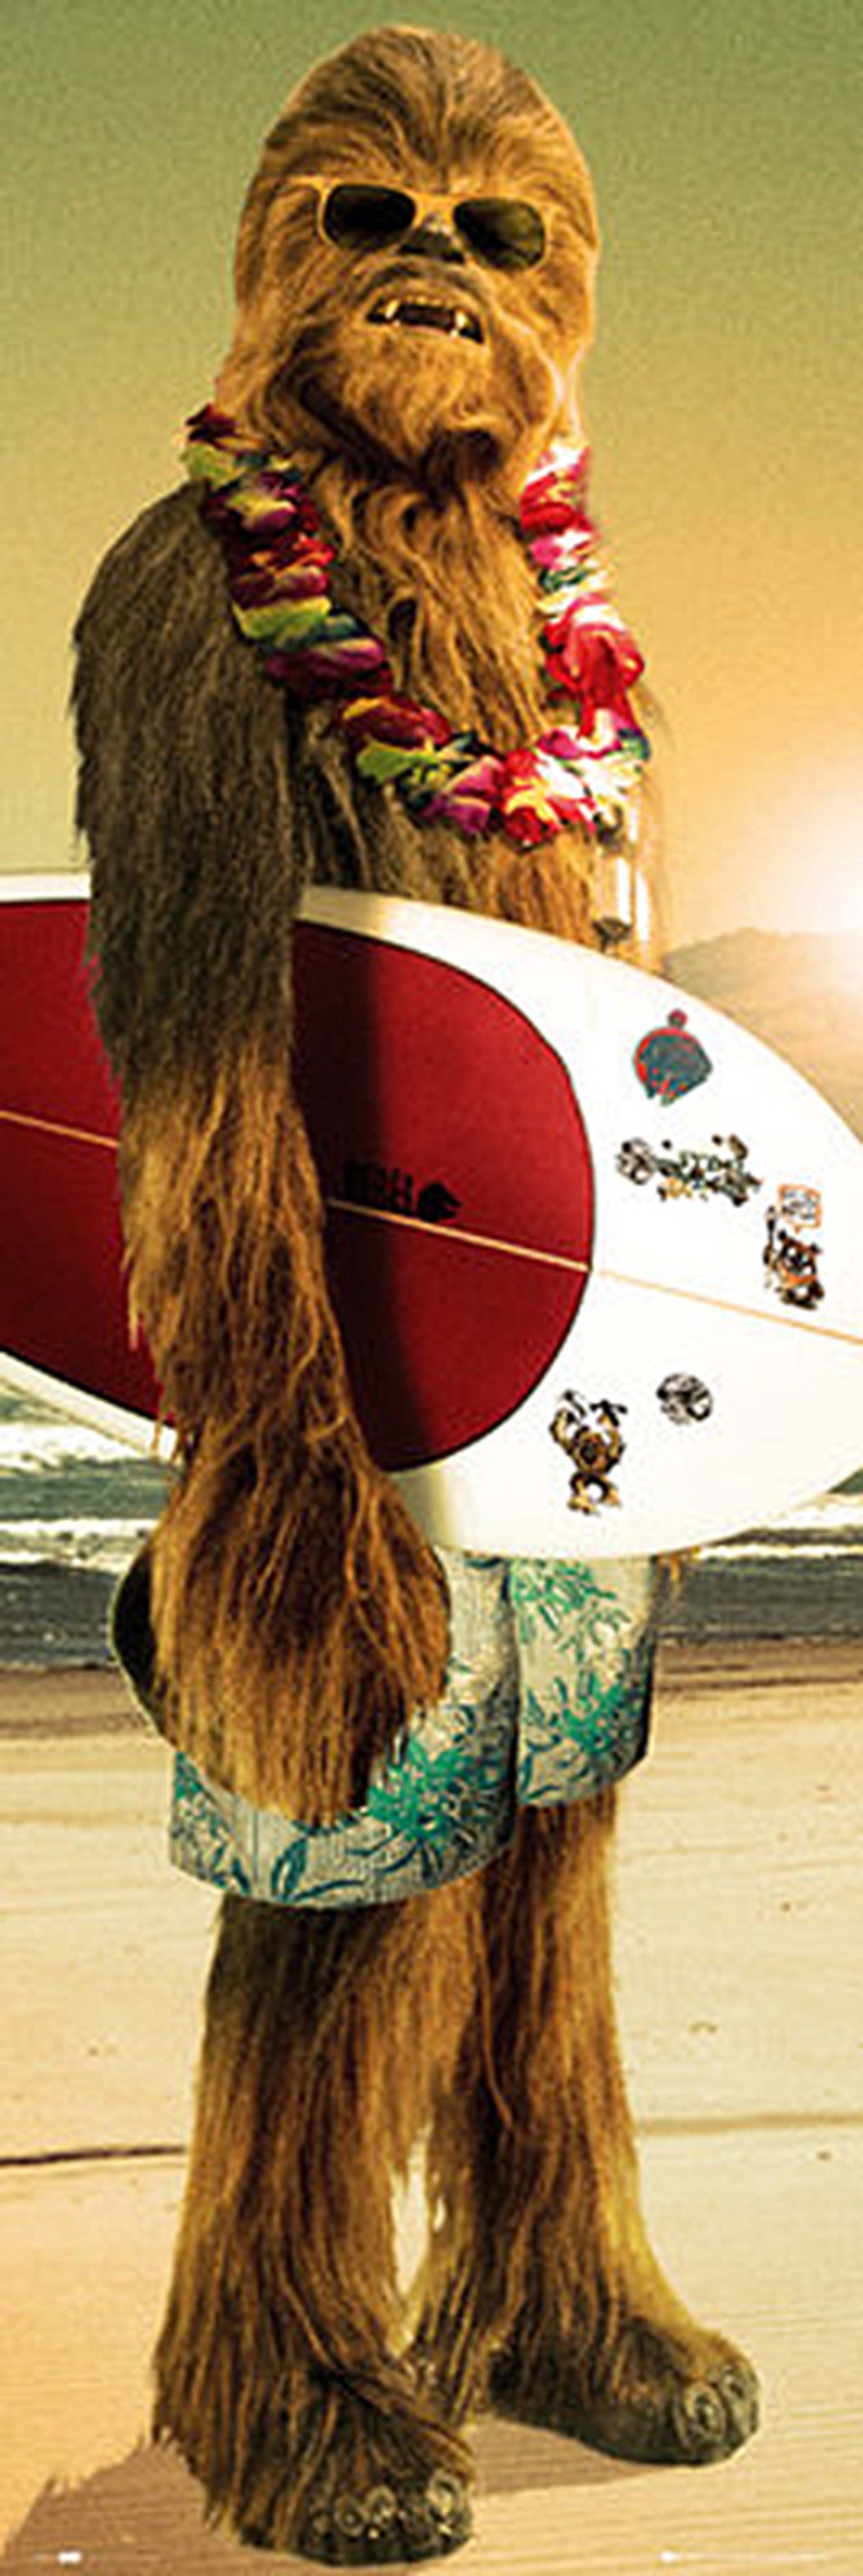 Star Wars Poster Star Wars Poster Chewbacca Surfin' 53 x 158 cm